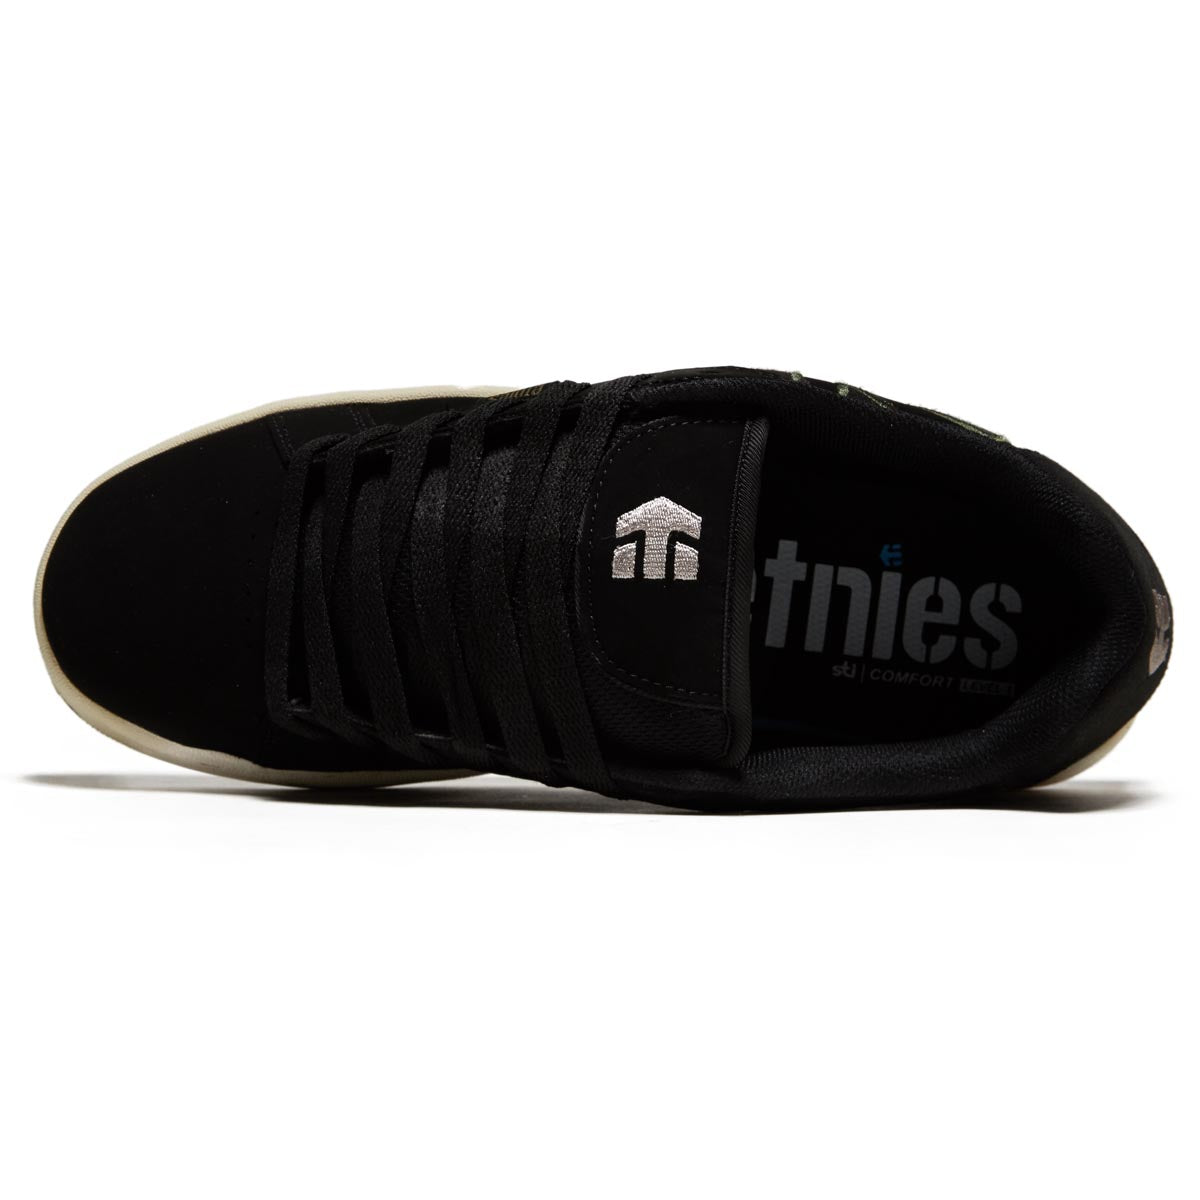 Etnies Fader Shoes - Black/Green image 3